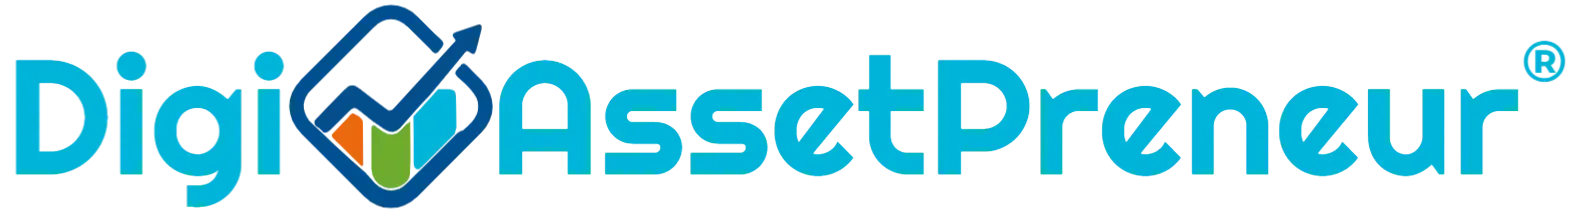 Digital Asset Entrepreneur Logo